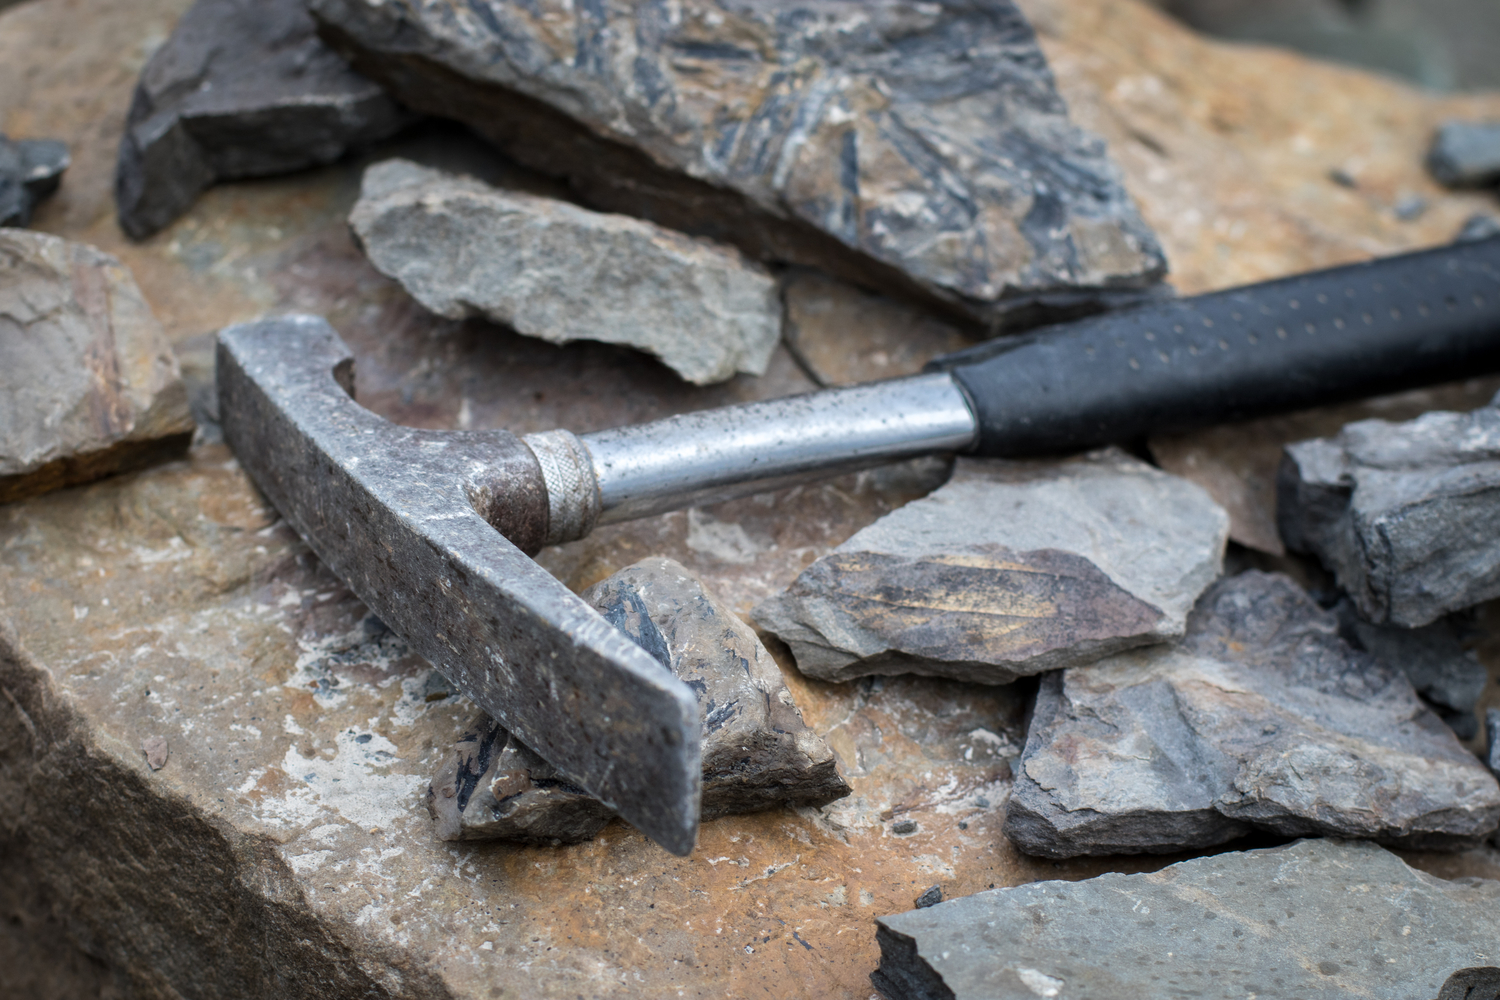 Rock Pick Hammer Kit - Equipment for Rock Hounding, Gold Mining